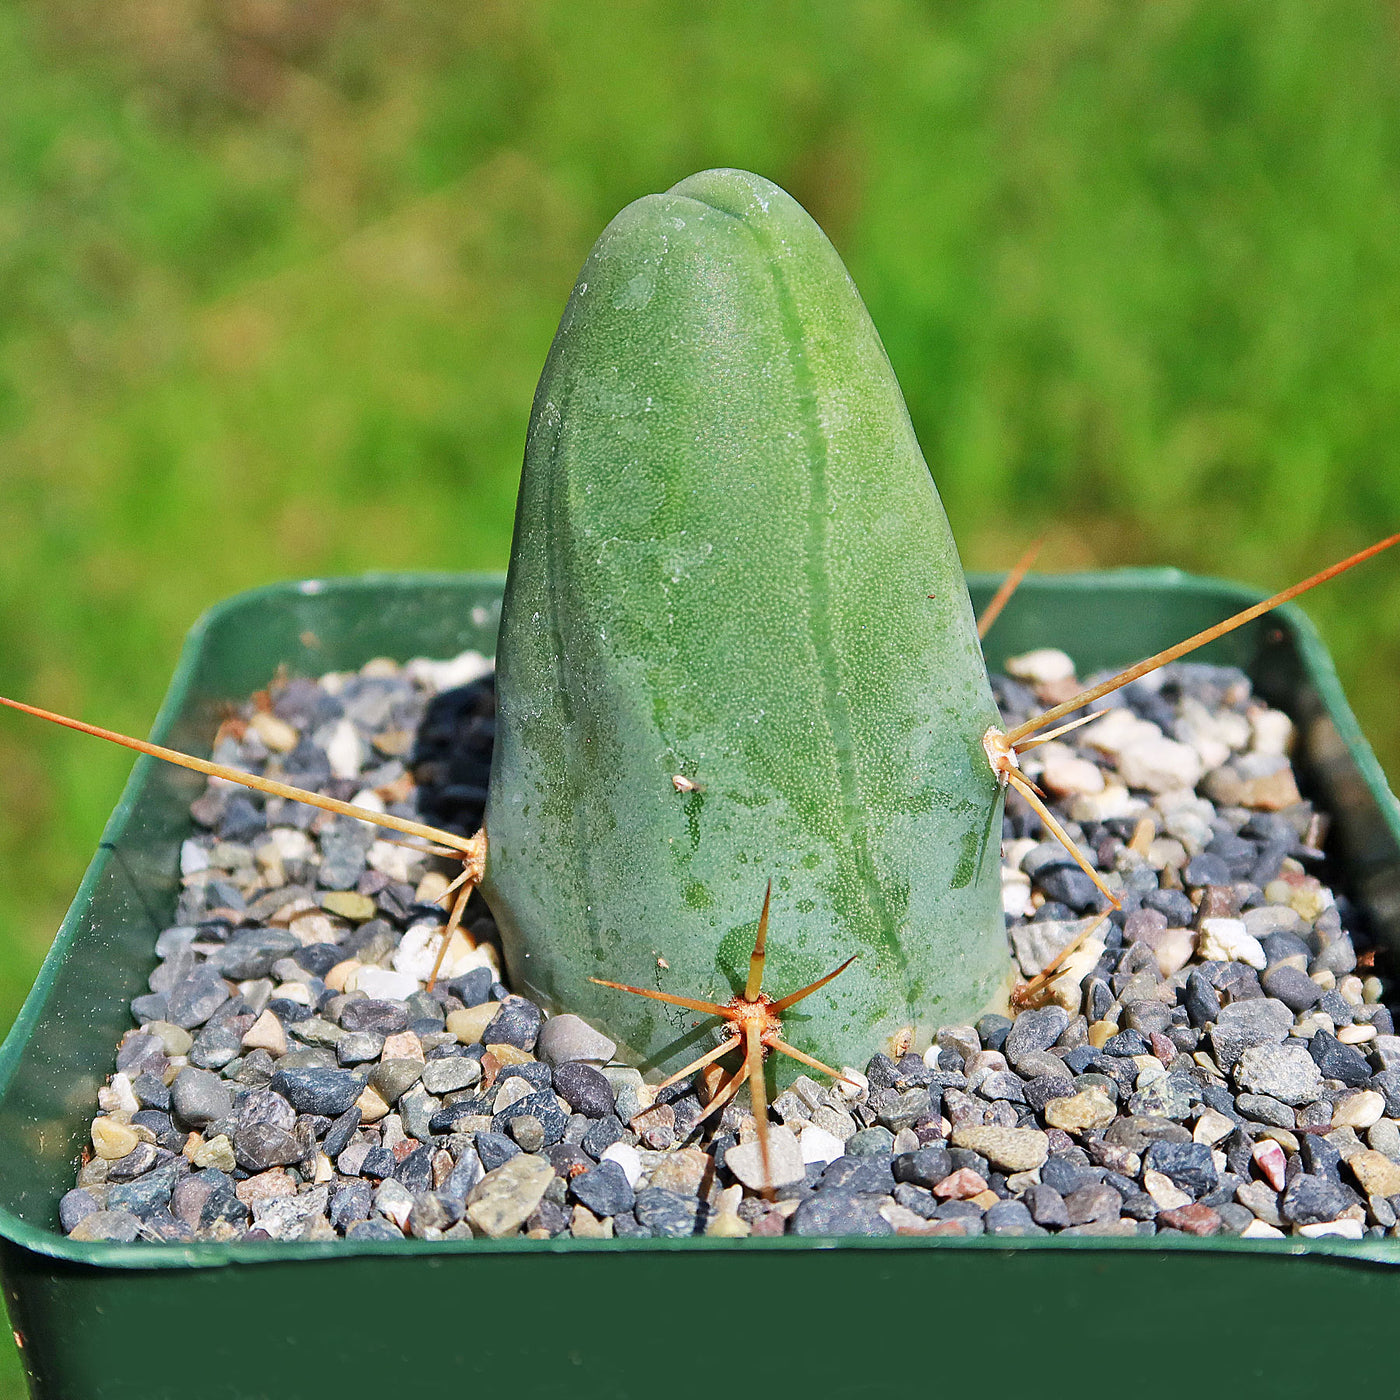 Penis Cactus - Trichocereus bridgesii monstrose